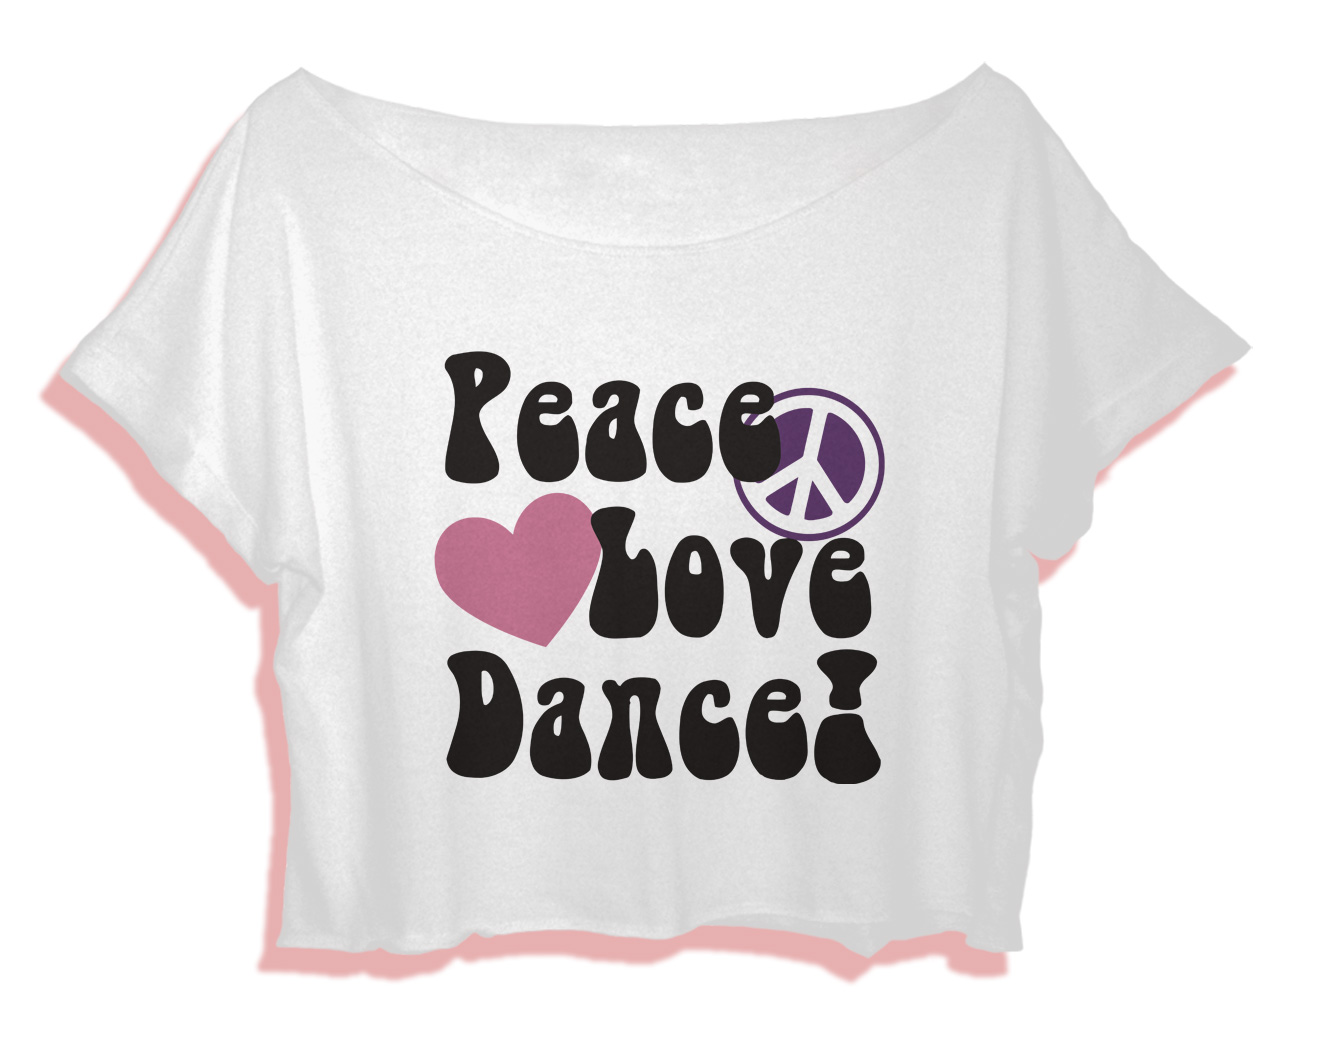 Crop Tee Dance Shirt Gift Women s T Shirt Peace Love Dance Crop Top